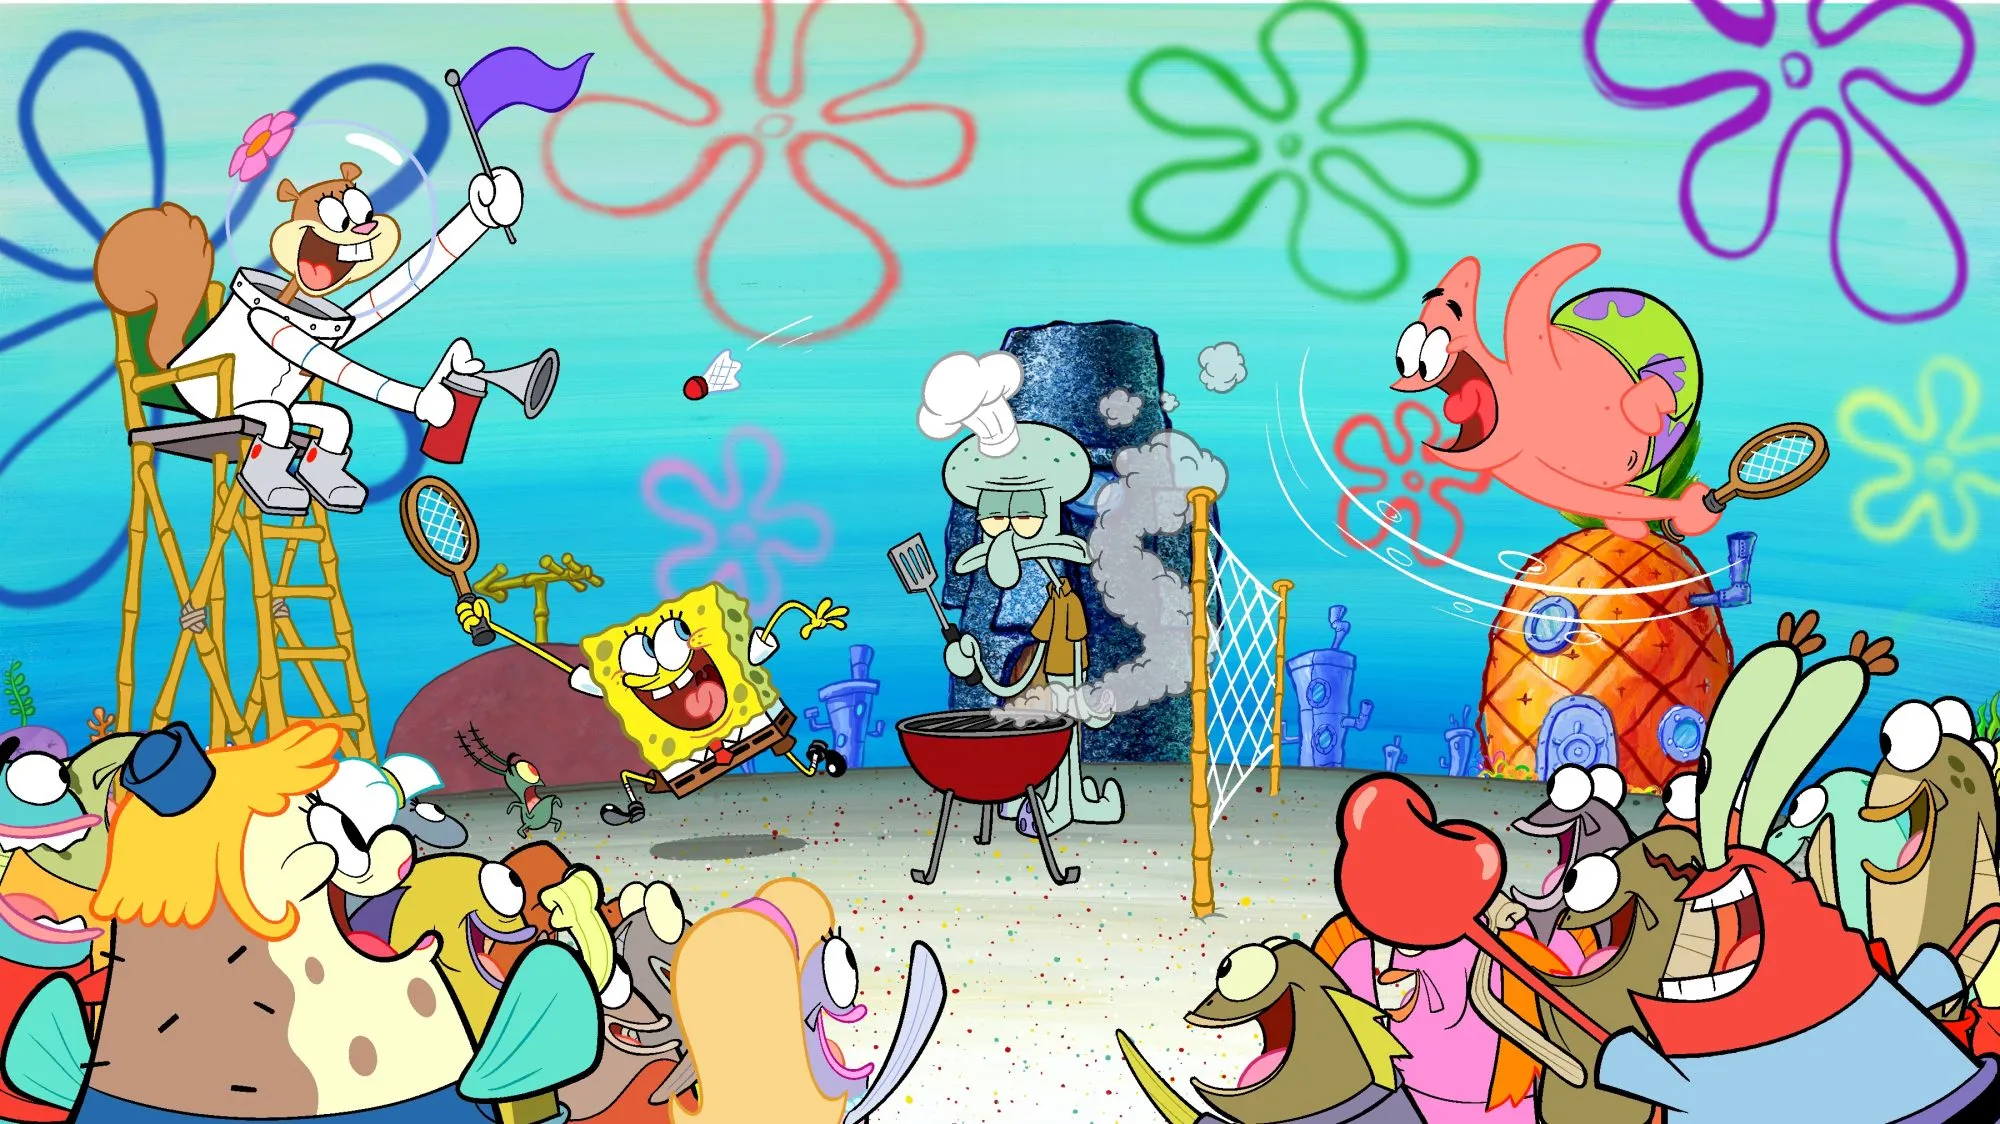 ‘SpongeBob SquarePants’ Renewed for Season 15 at Nickelodeon